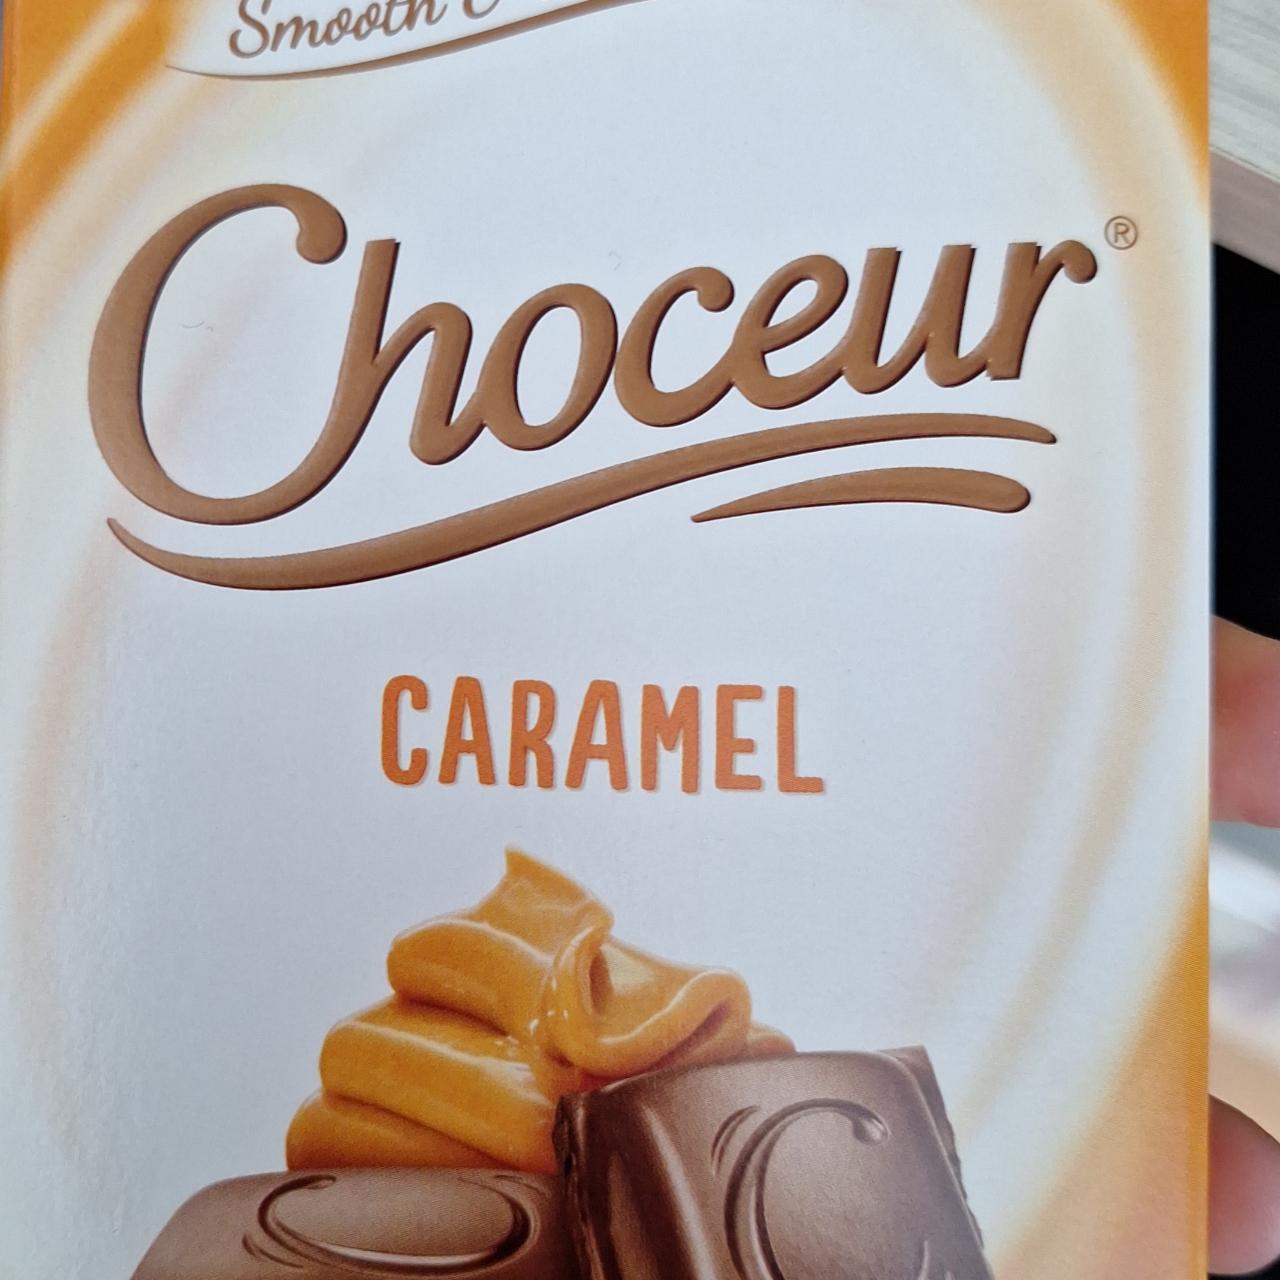 Фото - Smooth & Creamy Caramel Chocolate Choceur